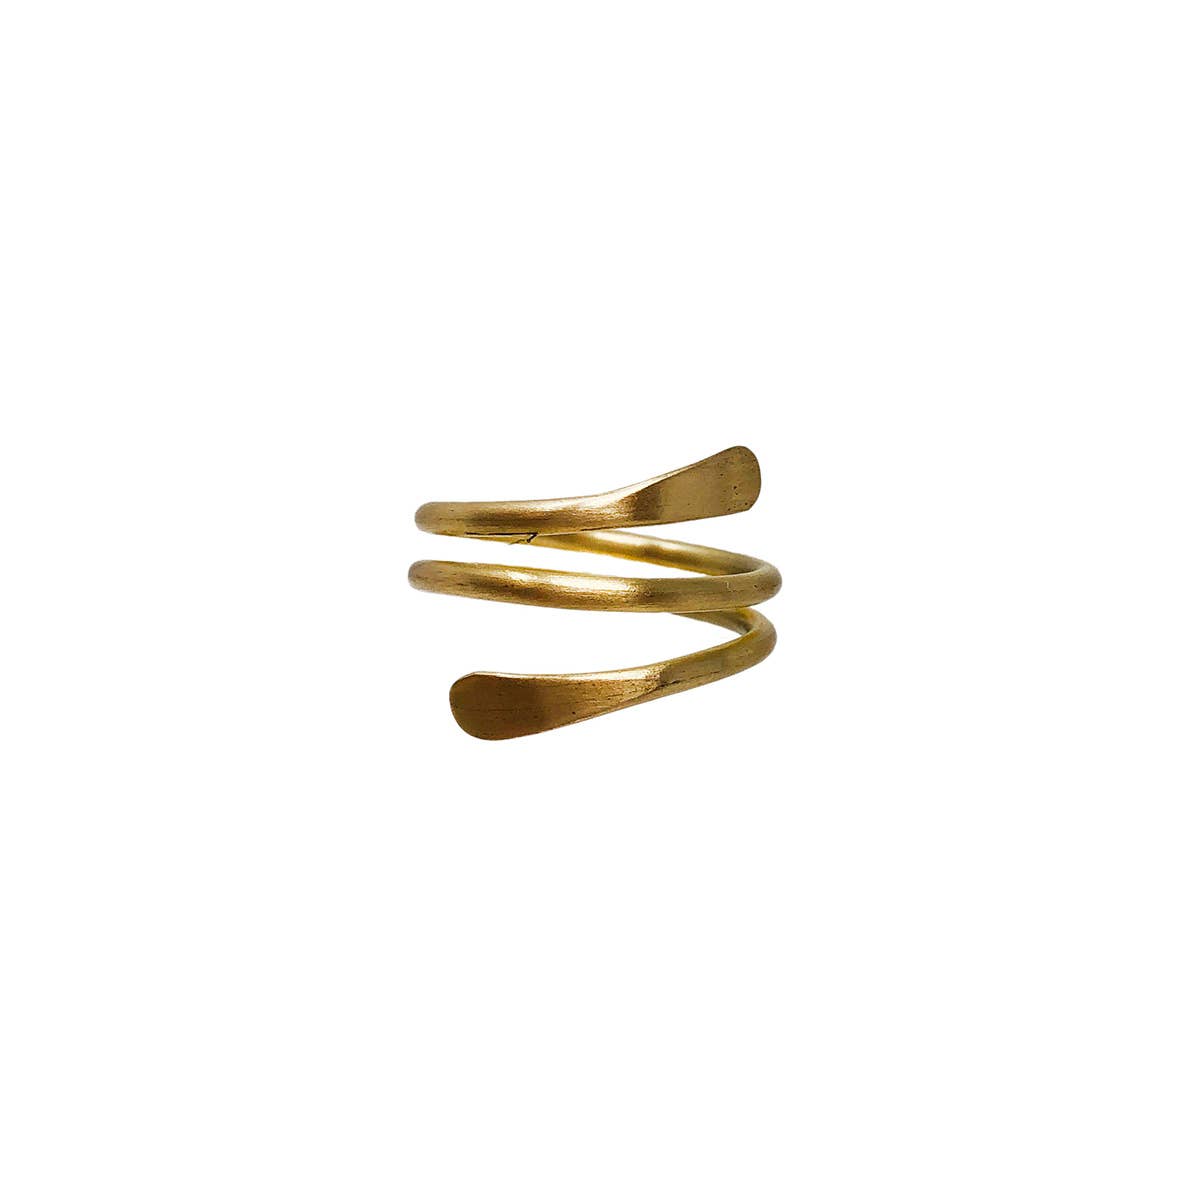 Coiled Wrap Ring - Gold - Recetas Fair Trade